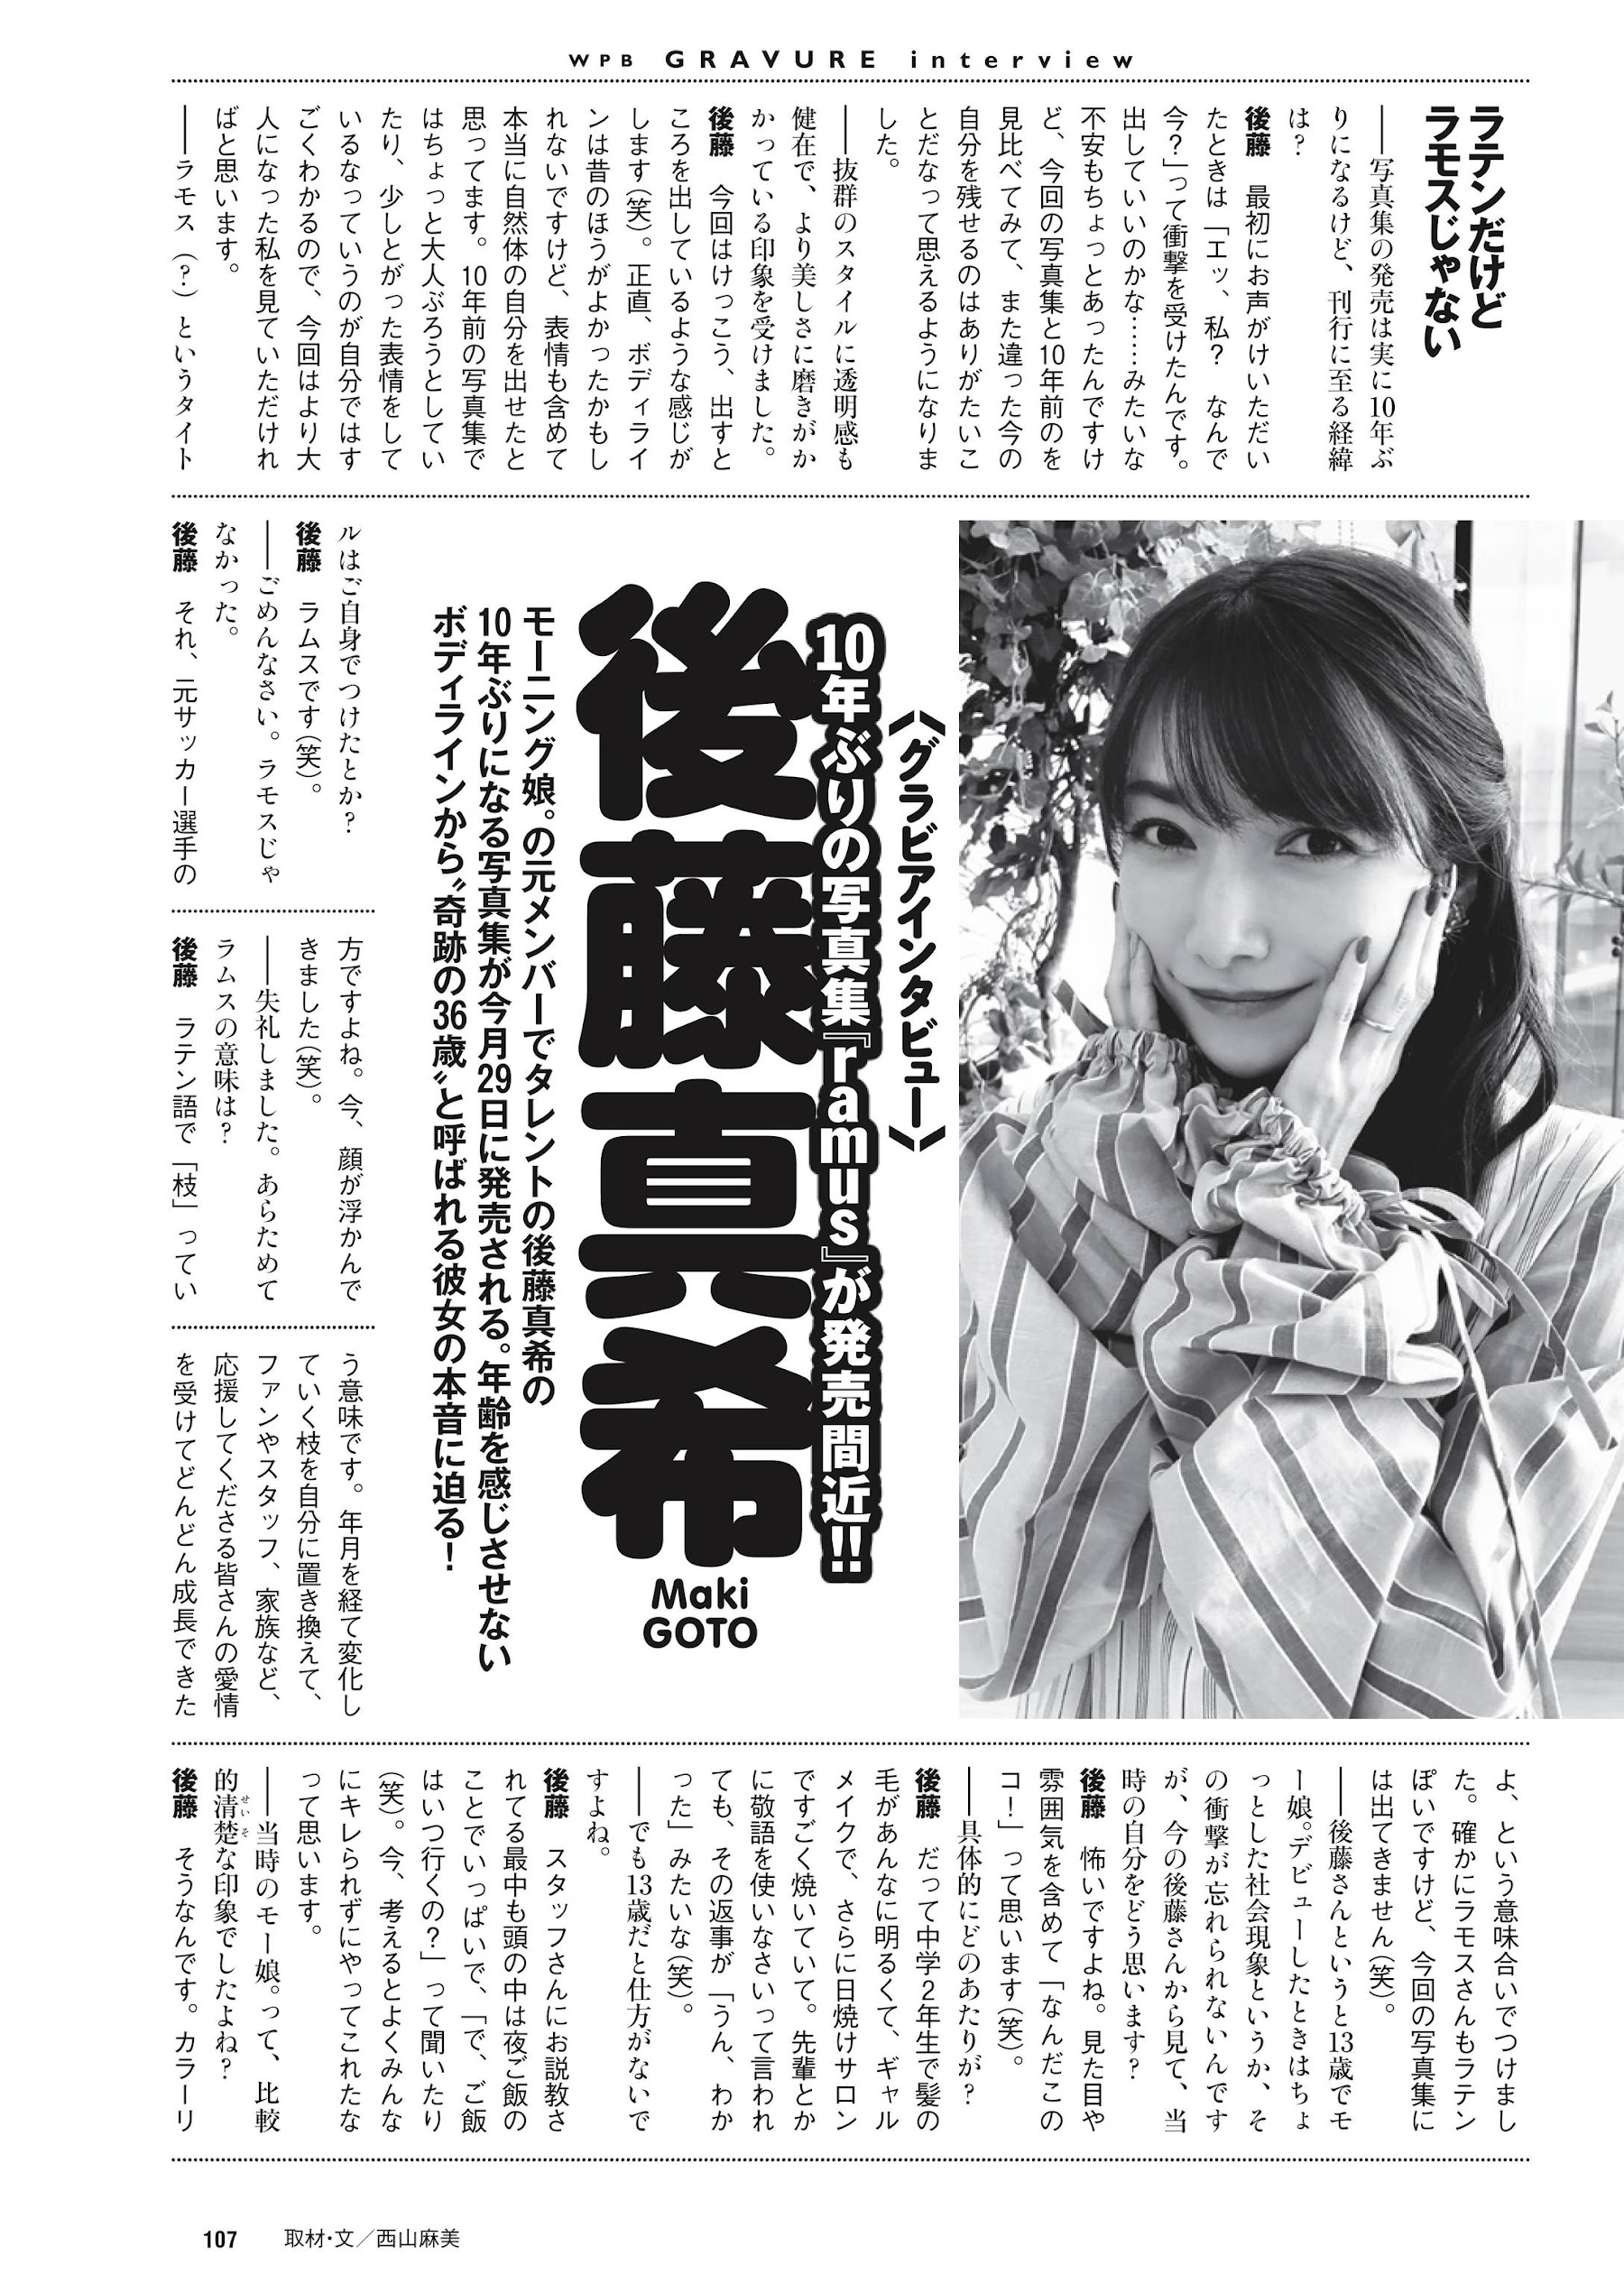 あかせあかり 大和田南那 Liyuu Weekly Playboy 2021.12.06 No.49 高清套图 第41张